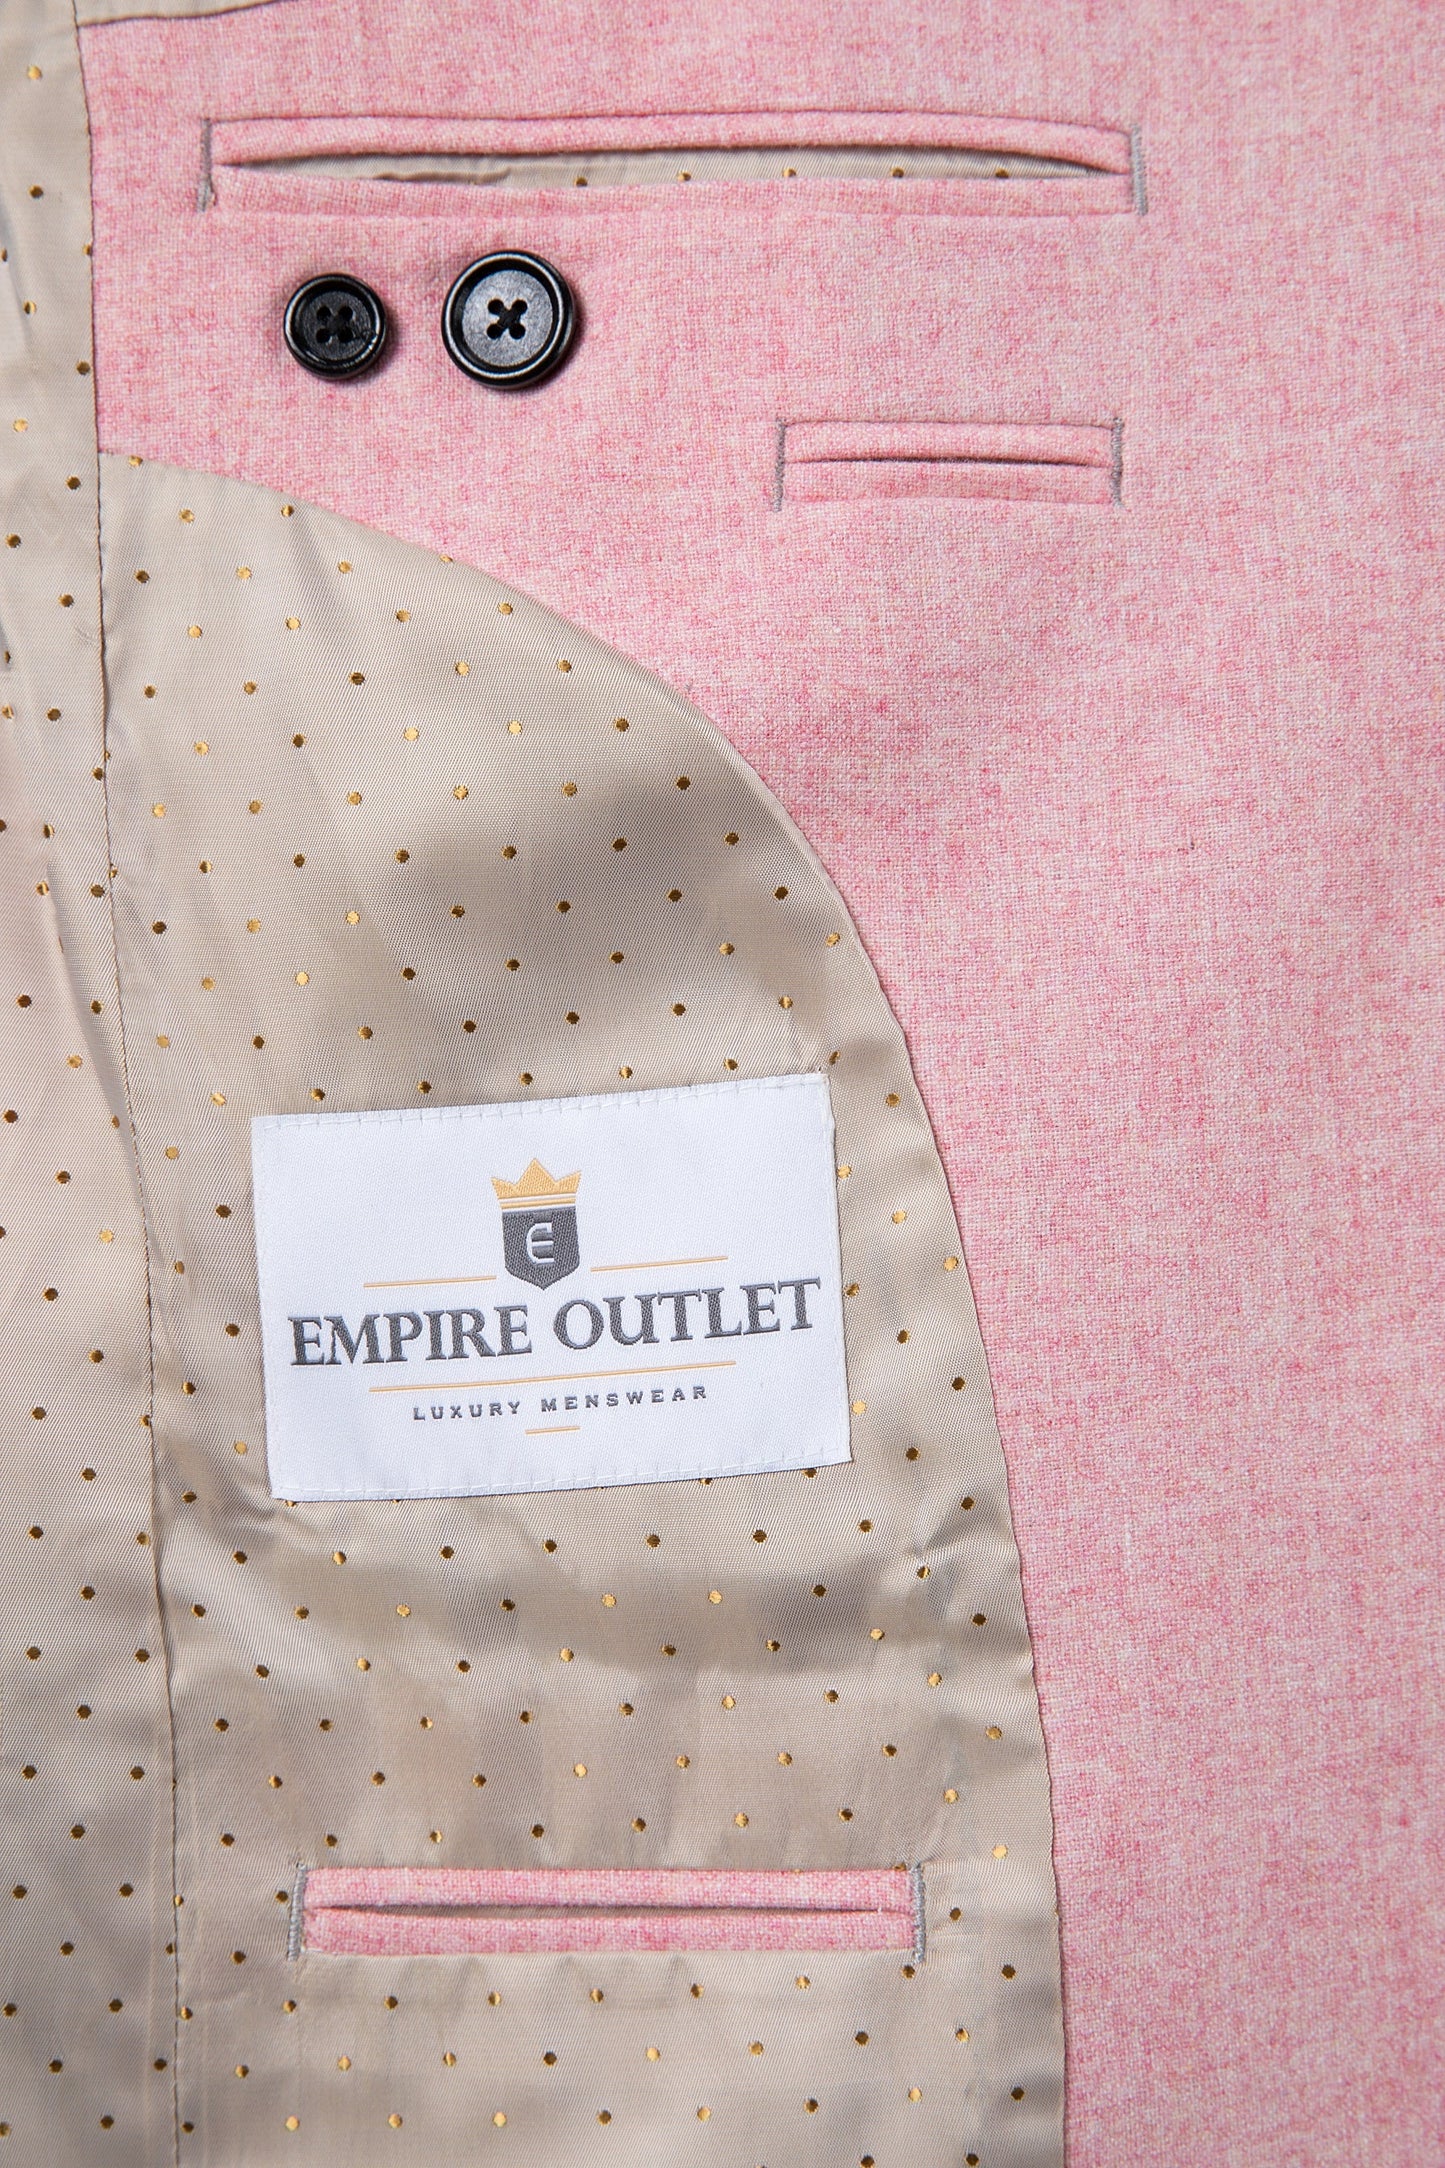 Pink Twill Tweed Jacket